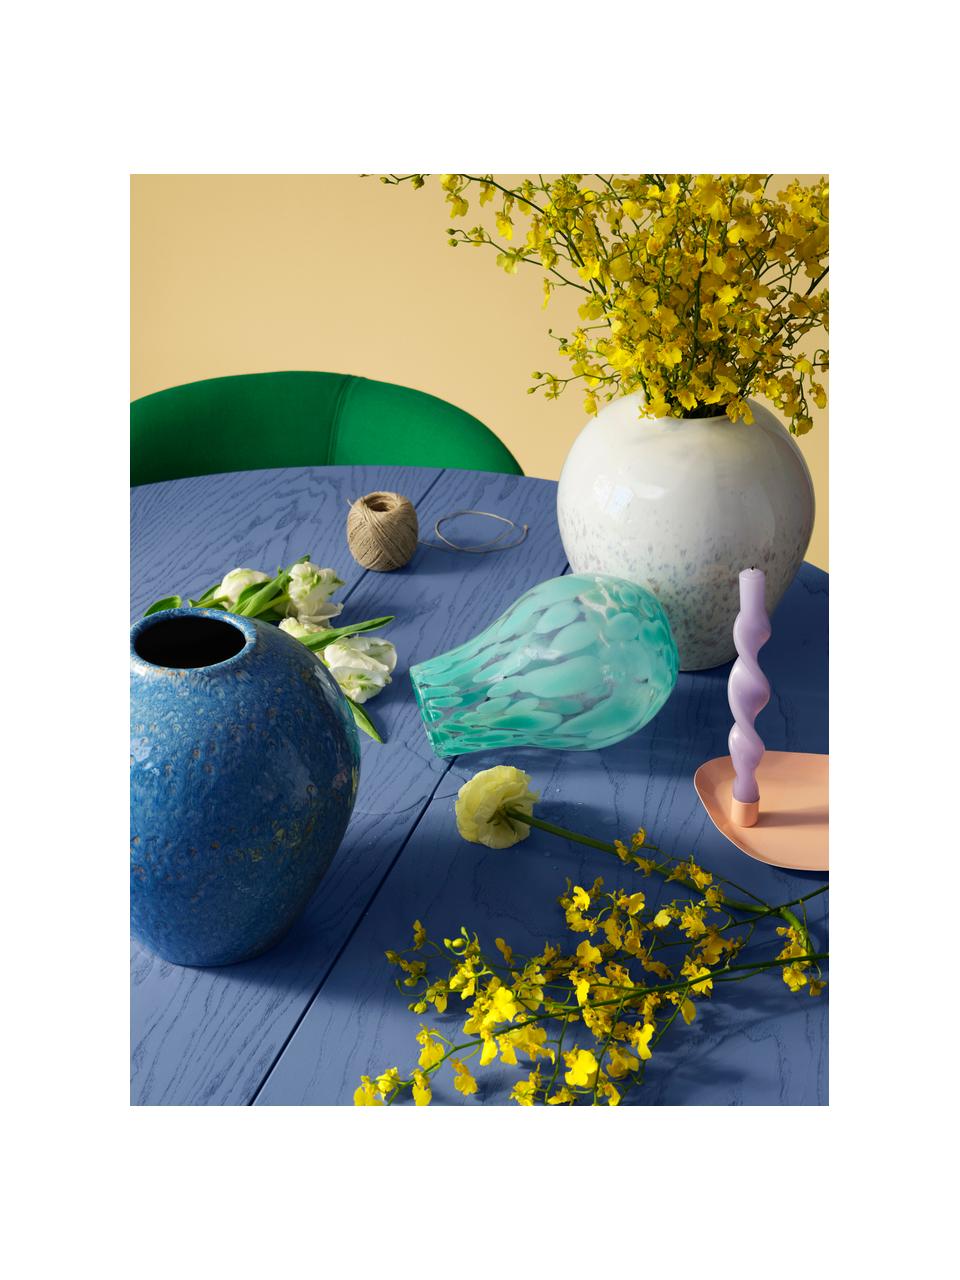 Ručne vyrobená váza Ingrid, V 26 cm, Keramika, glazúrovaná, Biela, strakatá, Ø 24 x V 26 cm